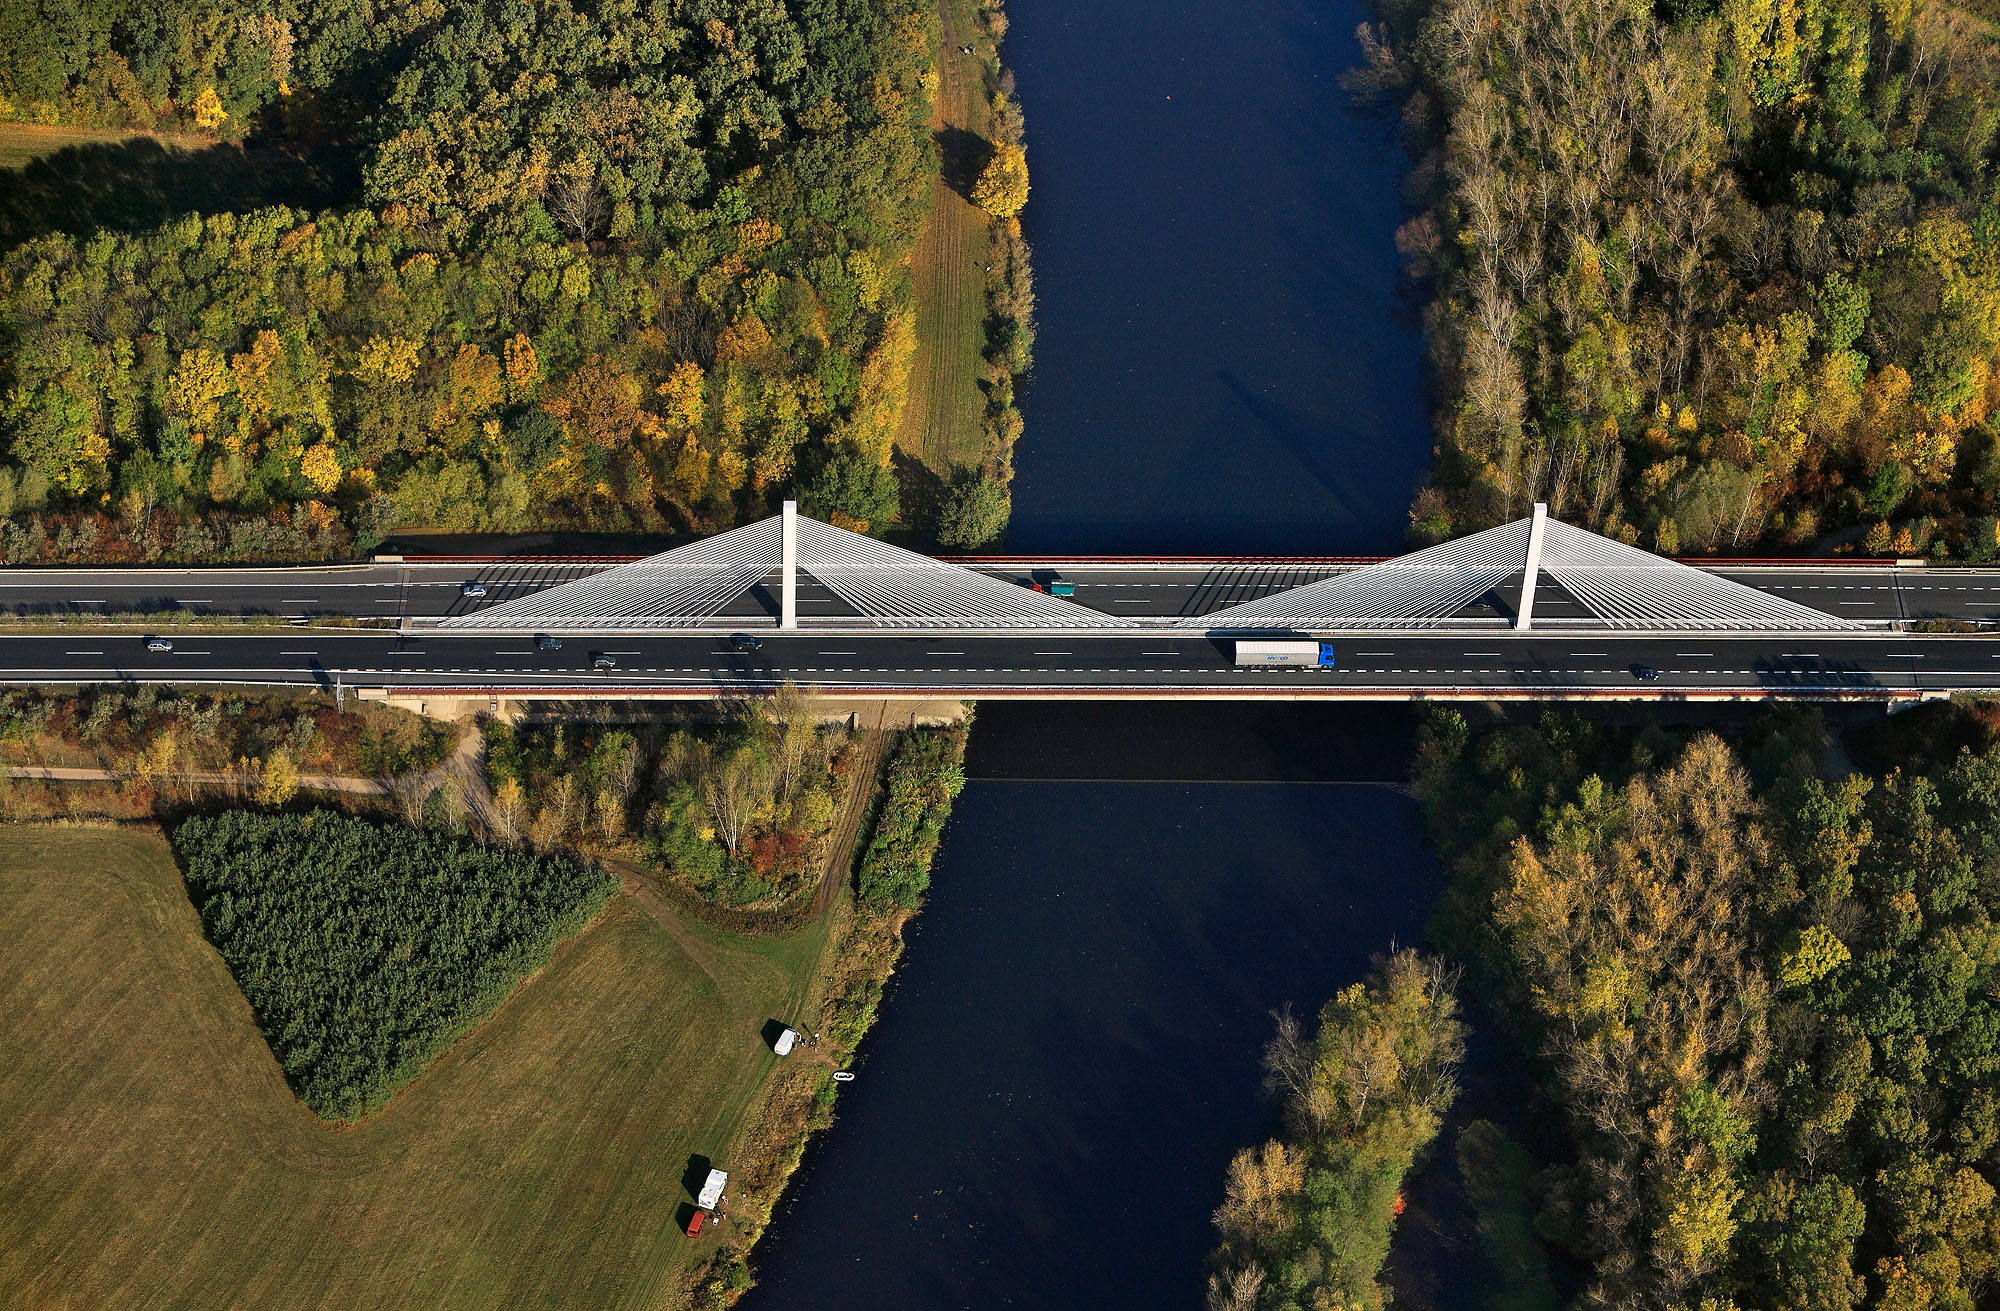 Ředitelství silnic a dálnic provádí v letošním roce opravy mostů v celkové hodnotě 2,6 mld. Kč